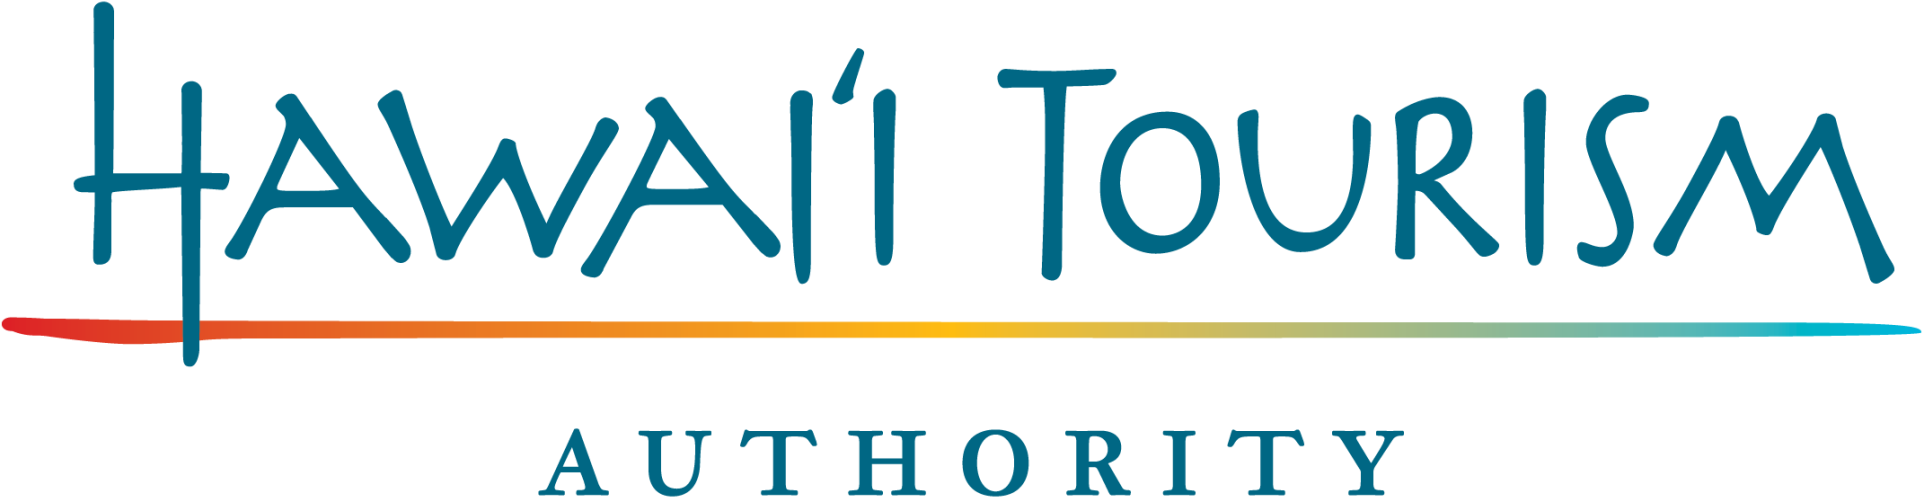 Aloha - Hawaii Tourism Authority Logo (2048x647)